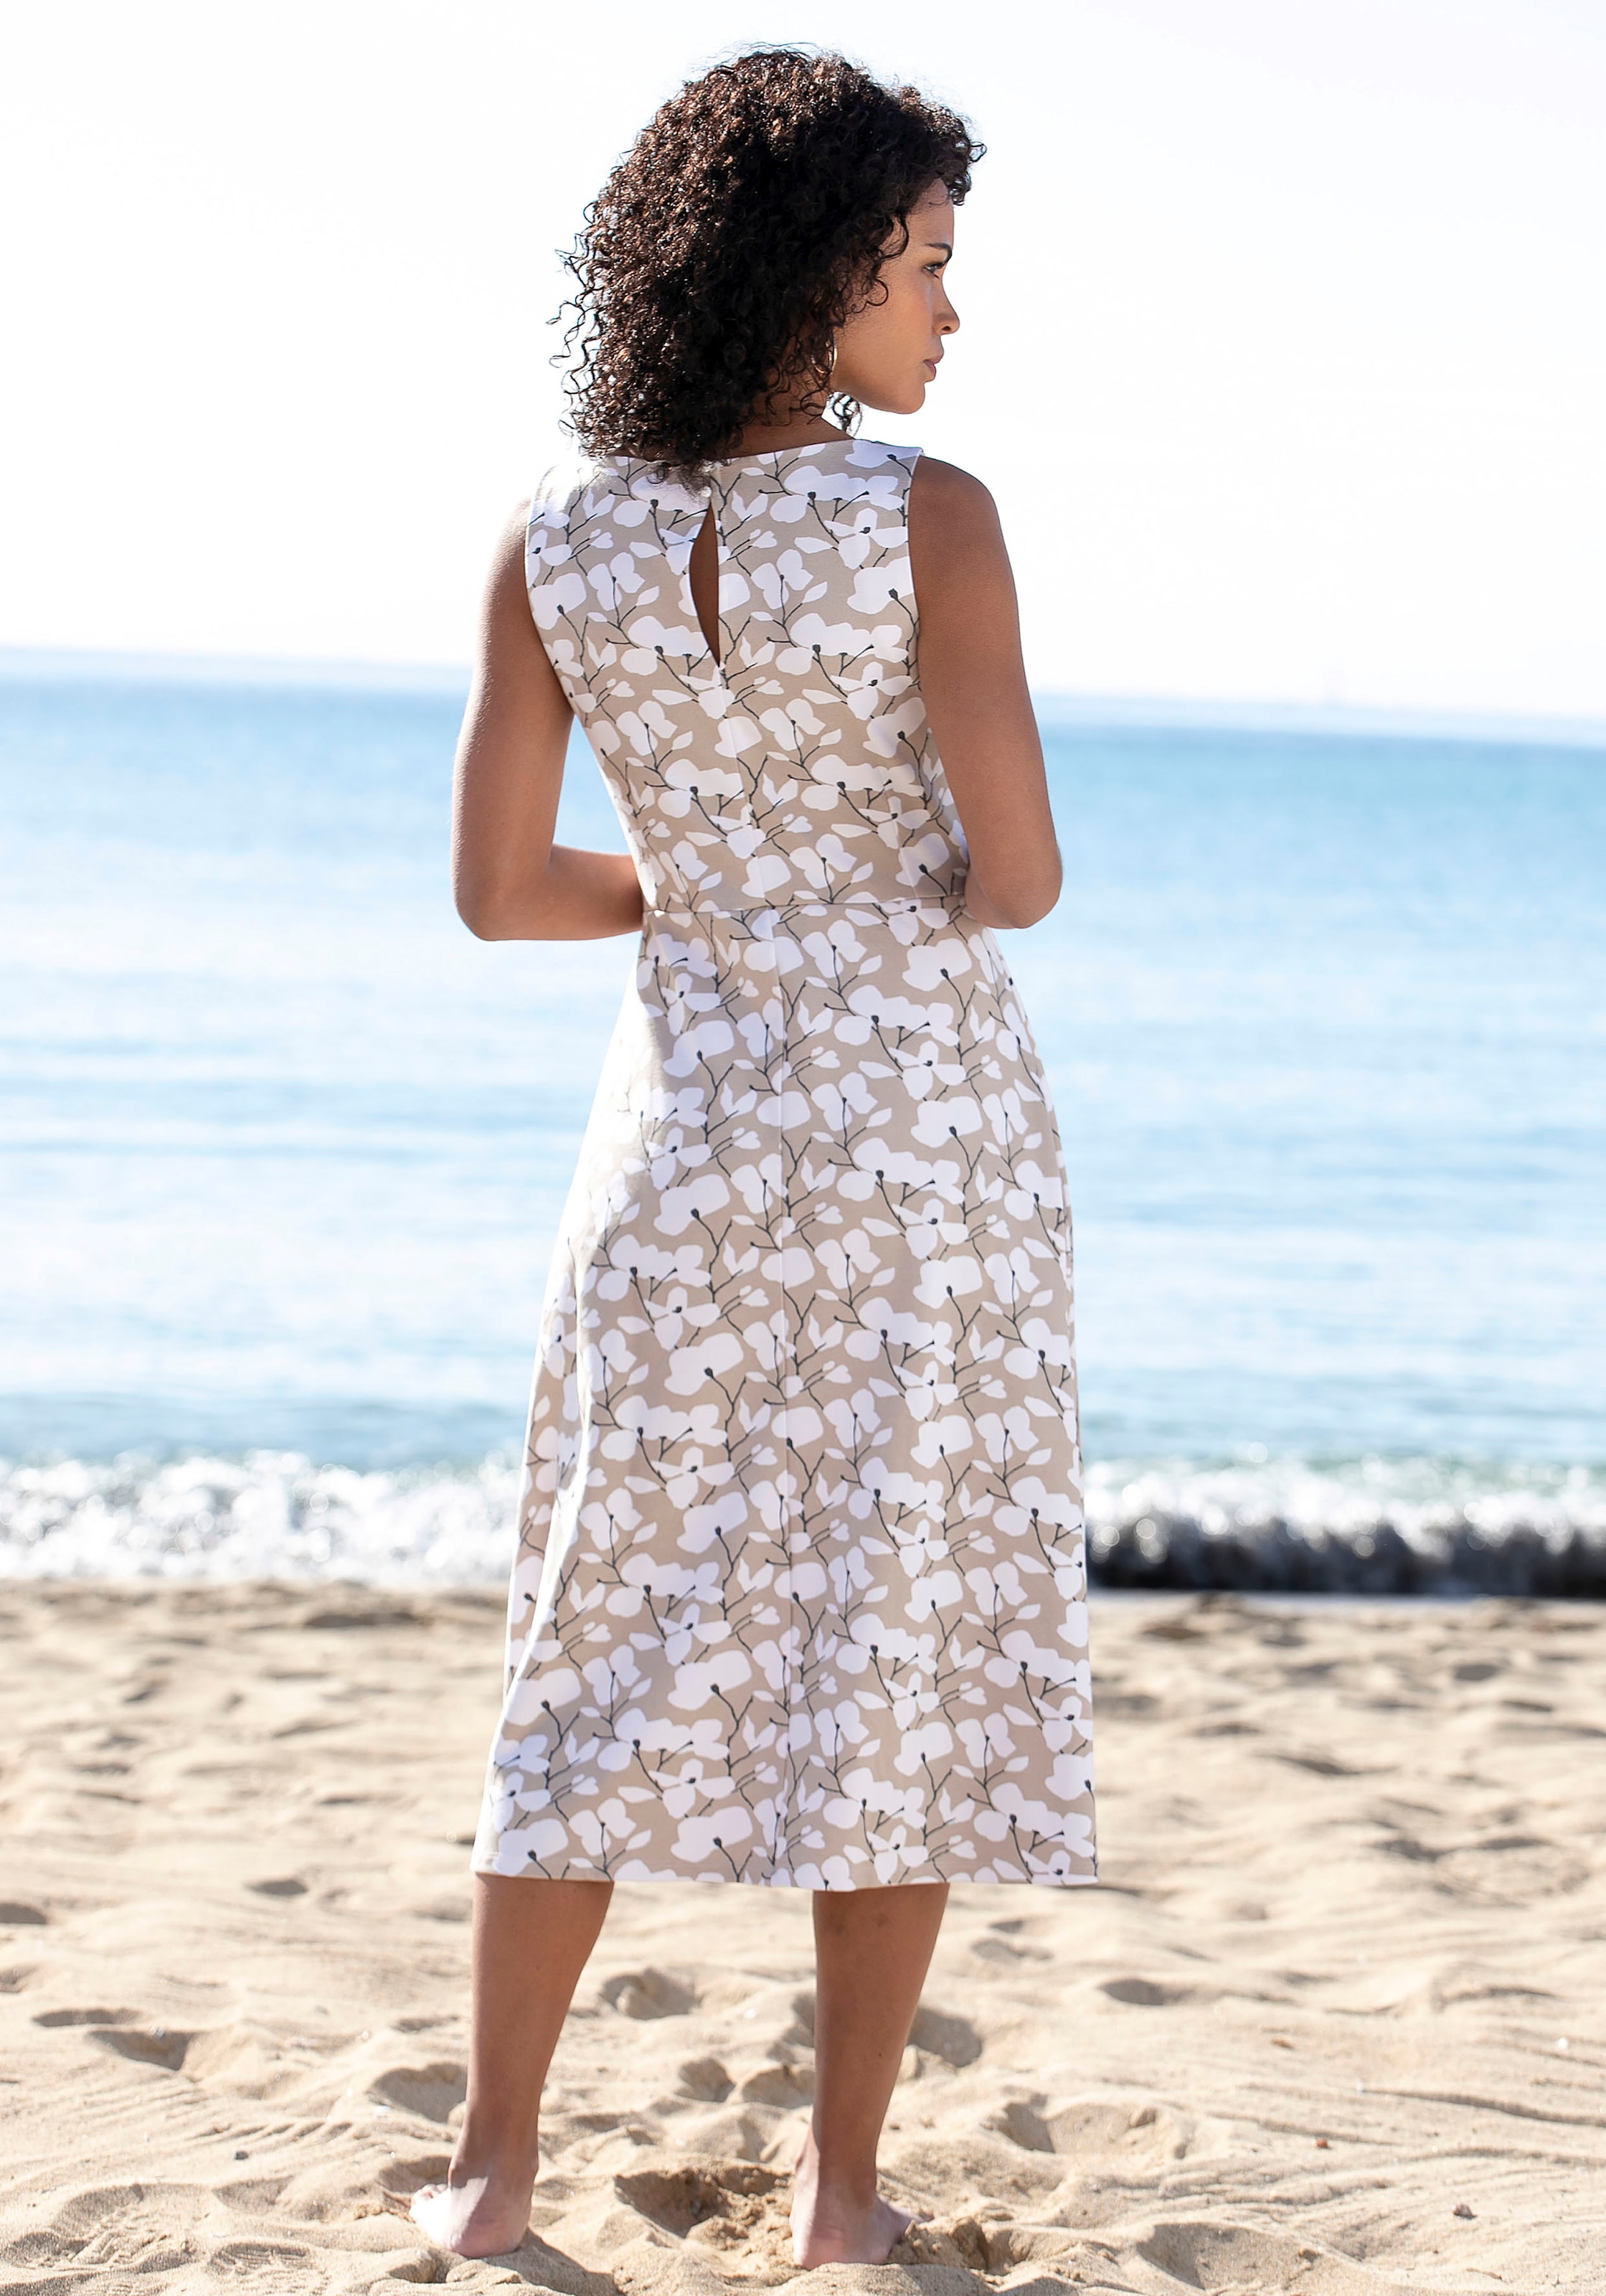 shoppen Beachtime Blumendruck, Sommerkleid, Strandbekleidung mit Strandmode,